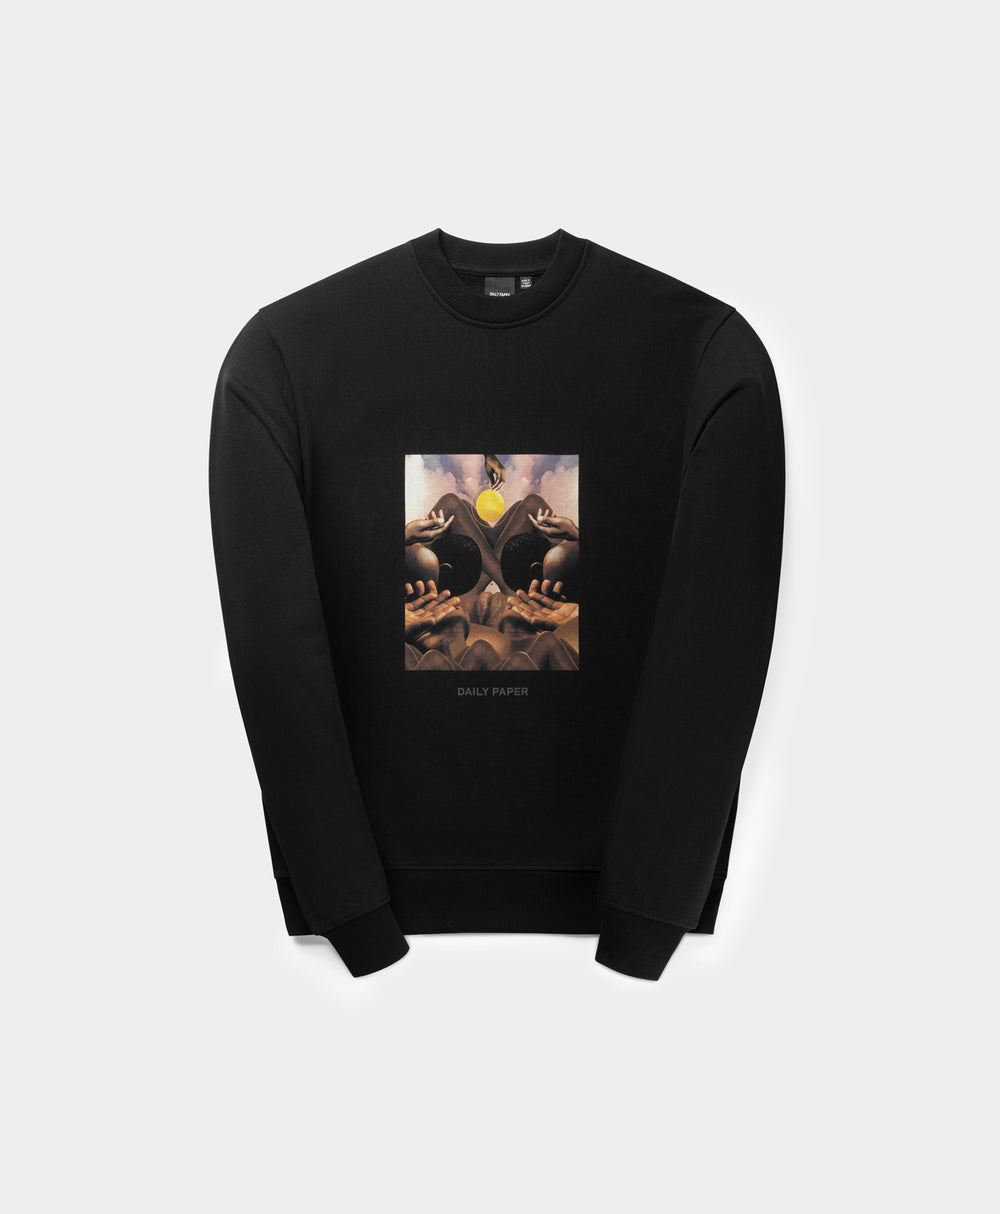 DP - Black Landscape Oversized Sweater - Packshot - Front